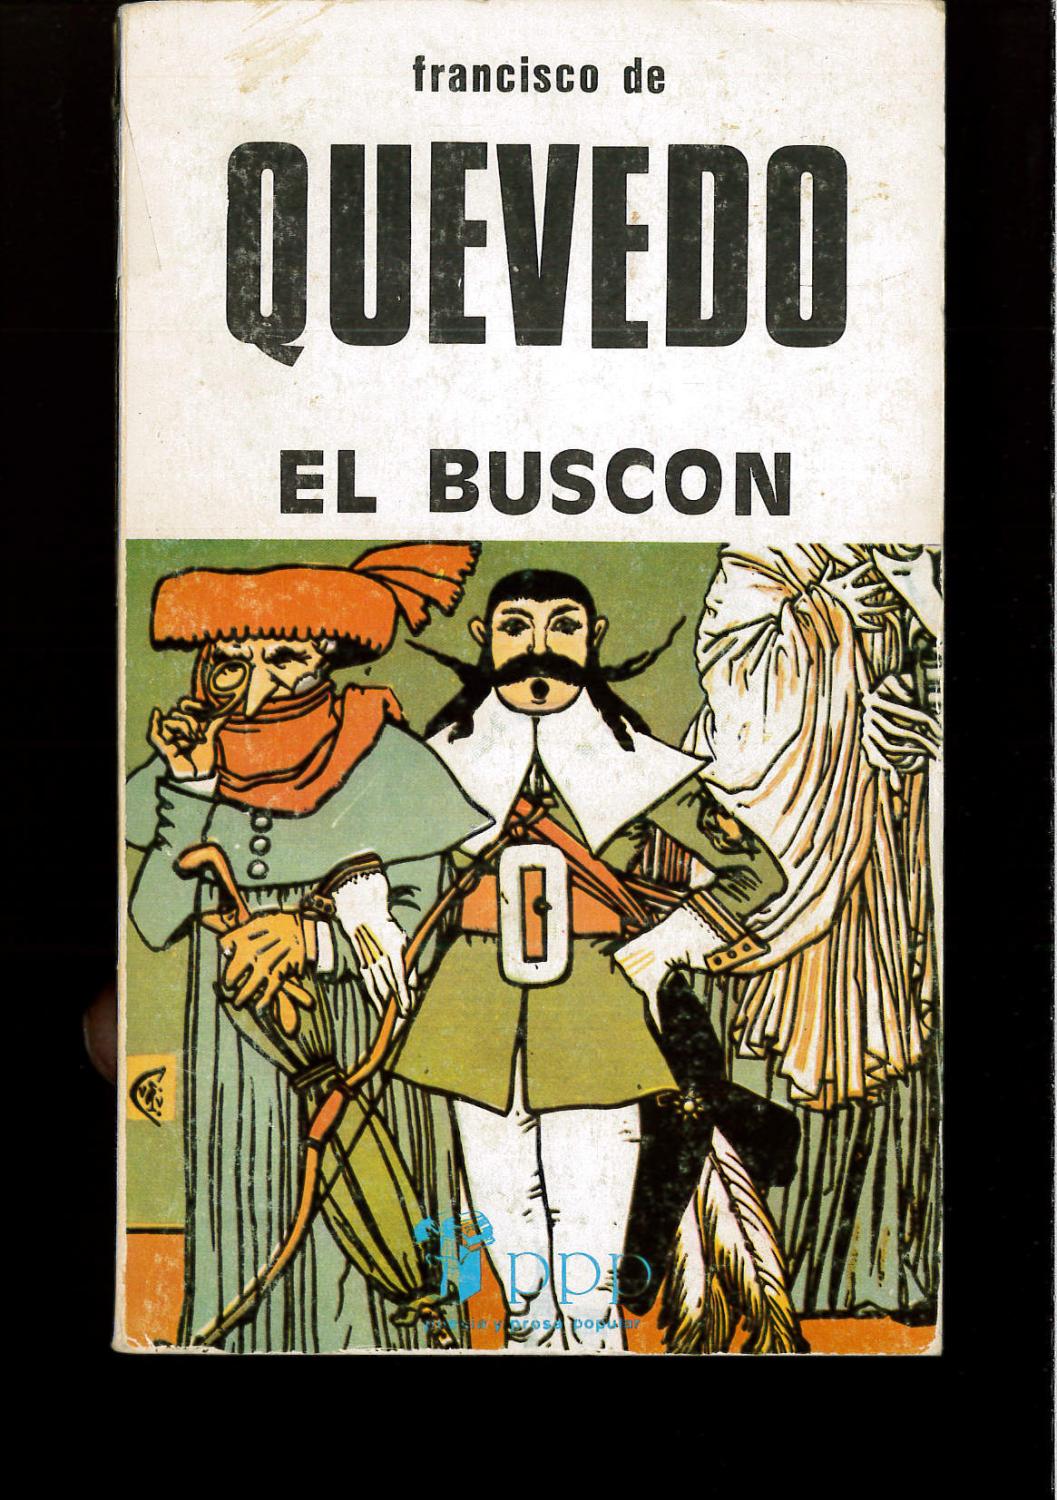 HISTORIA DE LA VIDA DEL BUSCON - FRANCISCO DE QUEVEDO